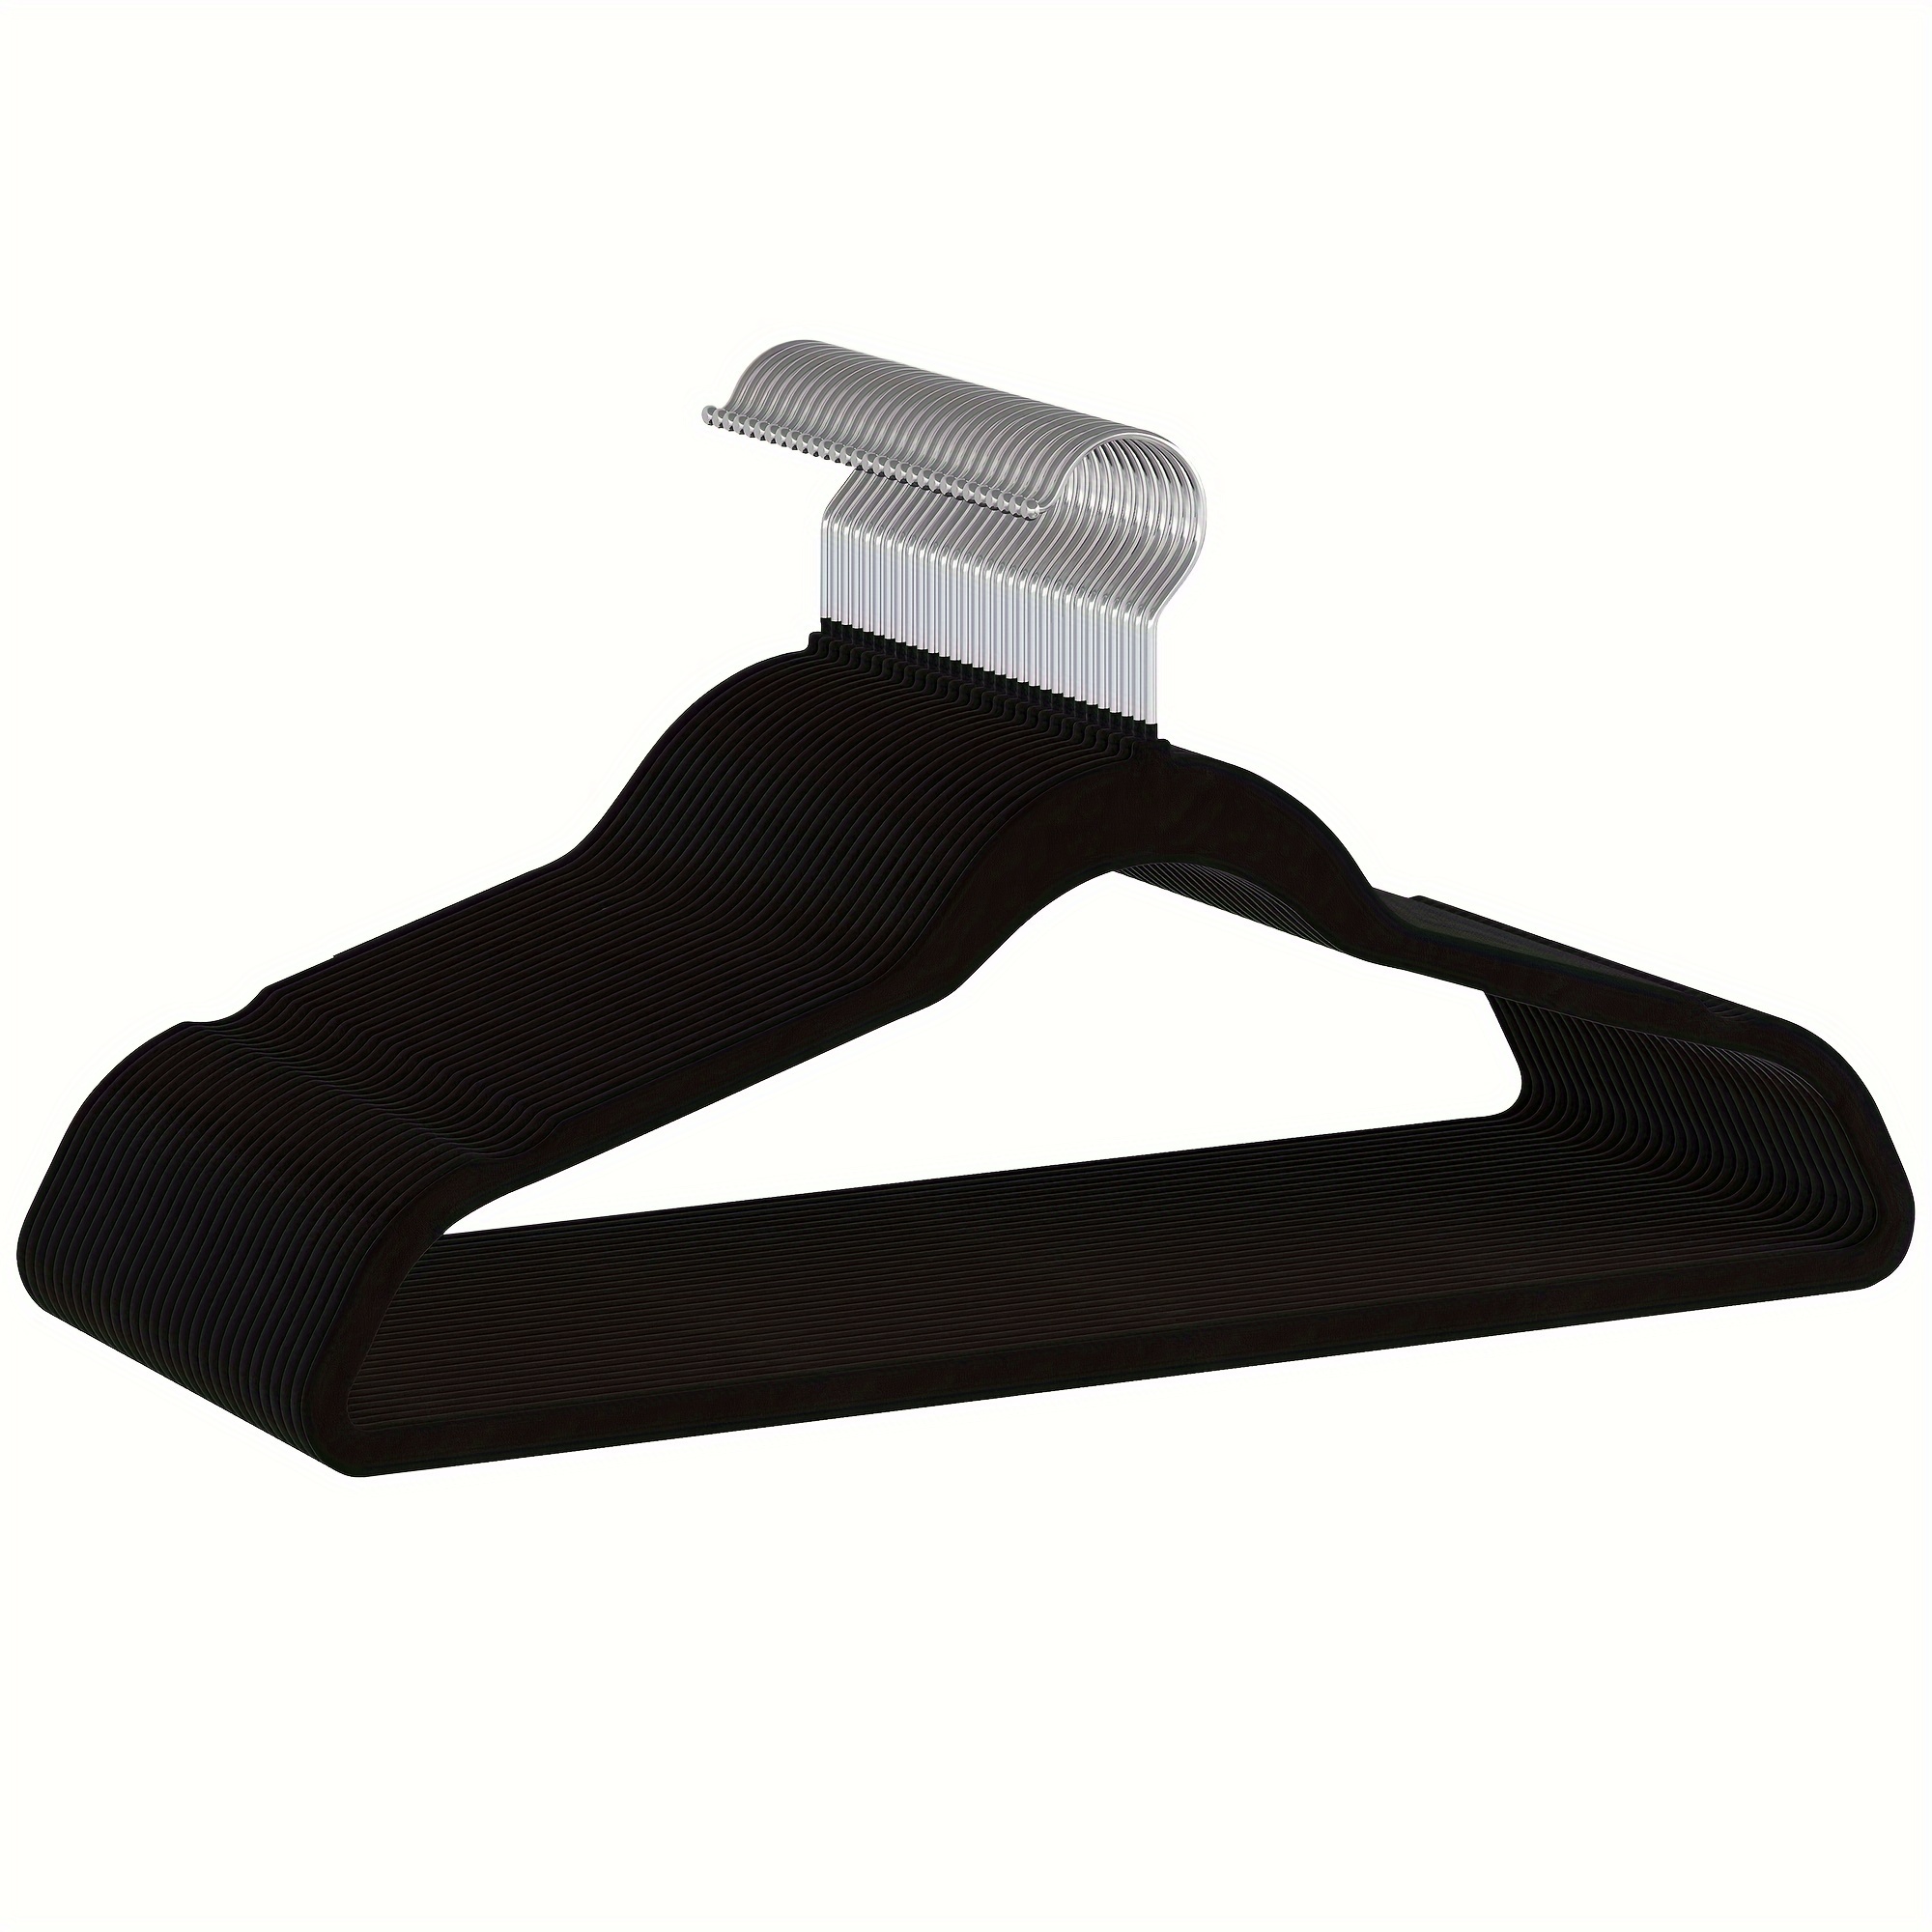 

Velvet Hangers Non-slip Clothes Hangers Black Hangers Suit Hangers With 360 Degree Rotatable Hook Coat Hangers Pants Hangers